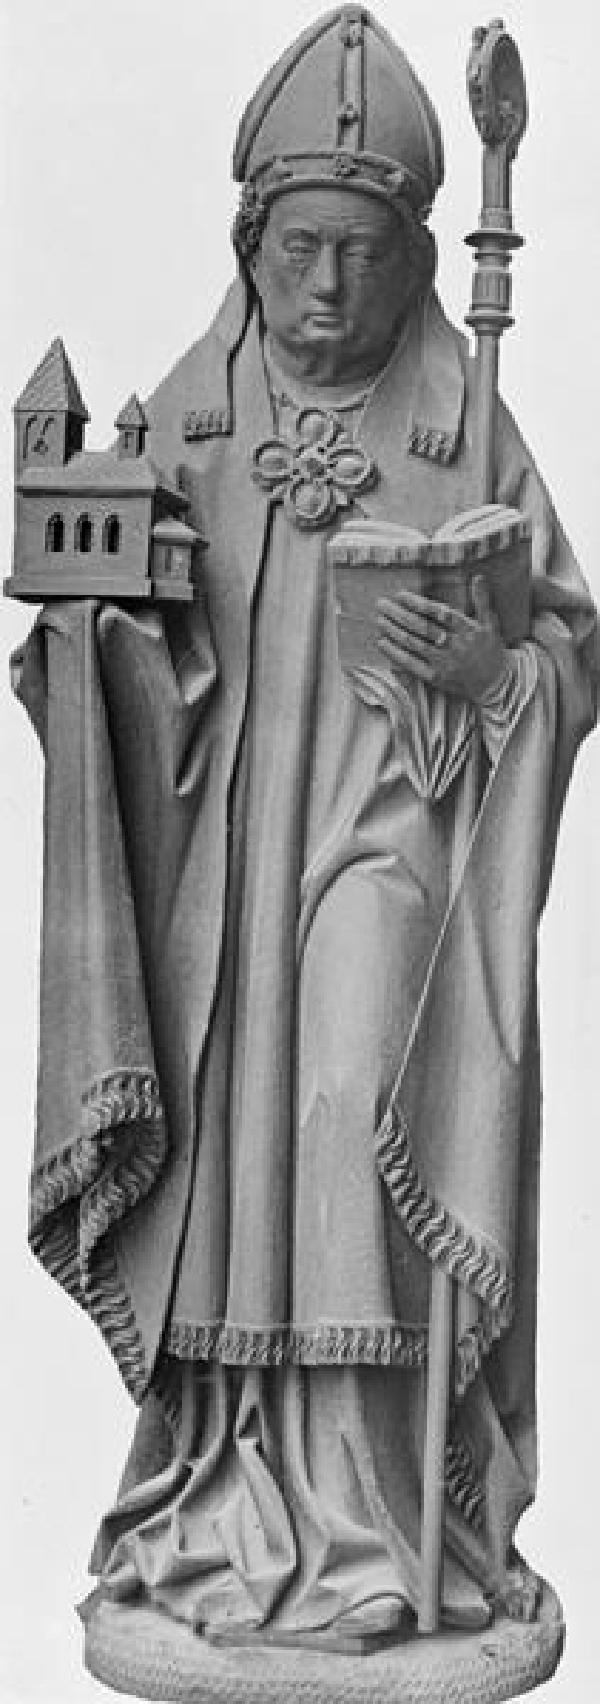 Heiliger Severin, Holzskulptur des Kölner Bischofs in der Katholischen Pfarrkirche St. Mariä Himmelfahrt in Ginderich, Arnt Beeldsnider zugeschrieben, um 1500